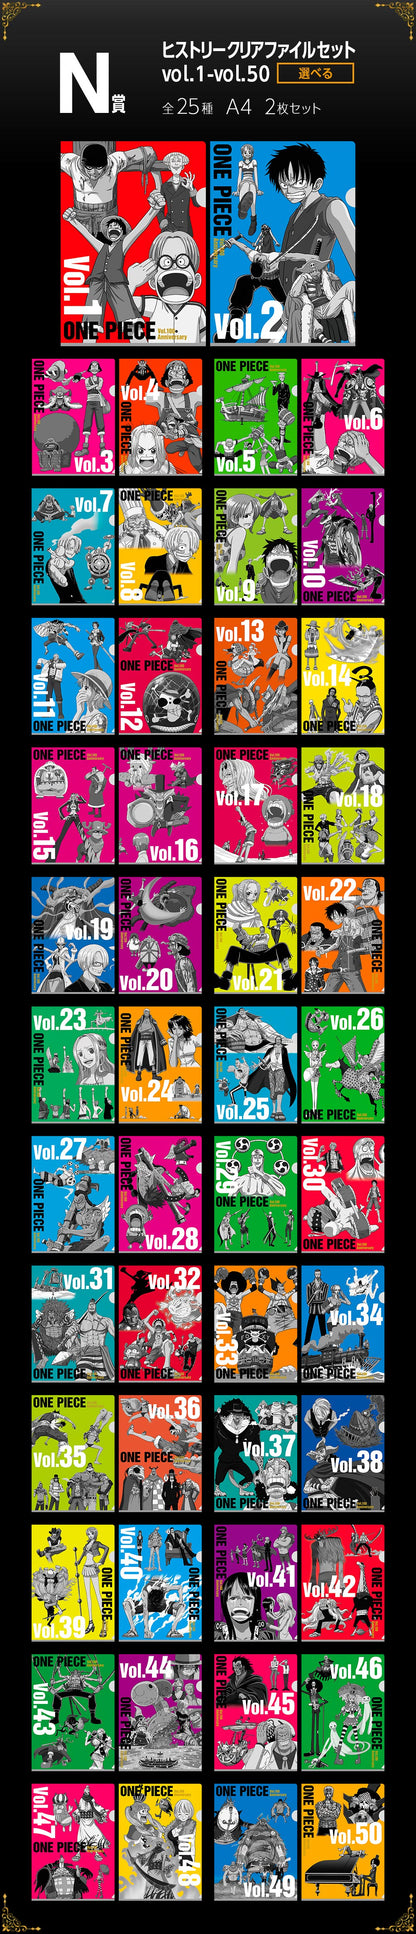 Ichiban Kuji: One Piece - Anniversary Vol. 100 (Full Set)